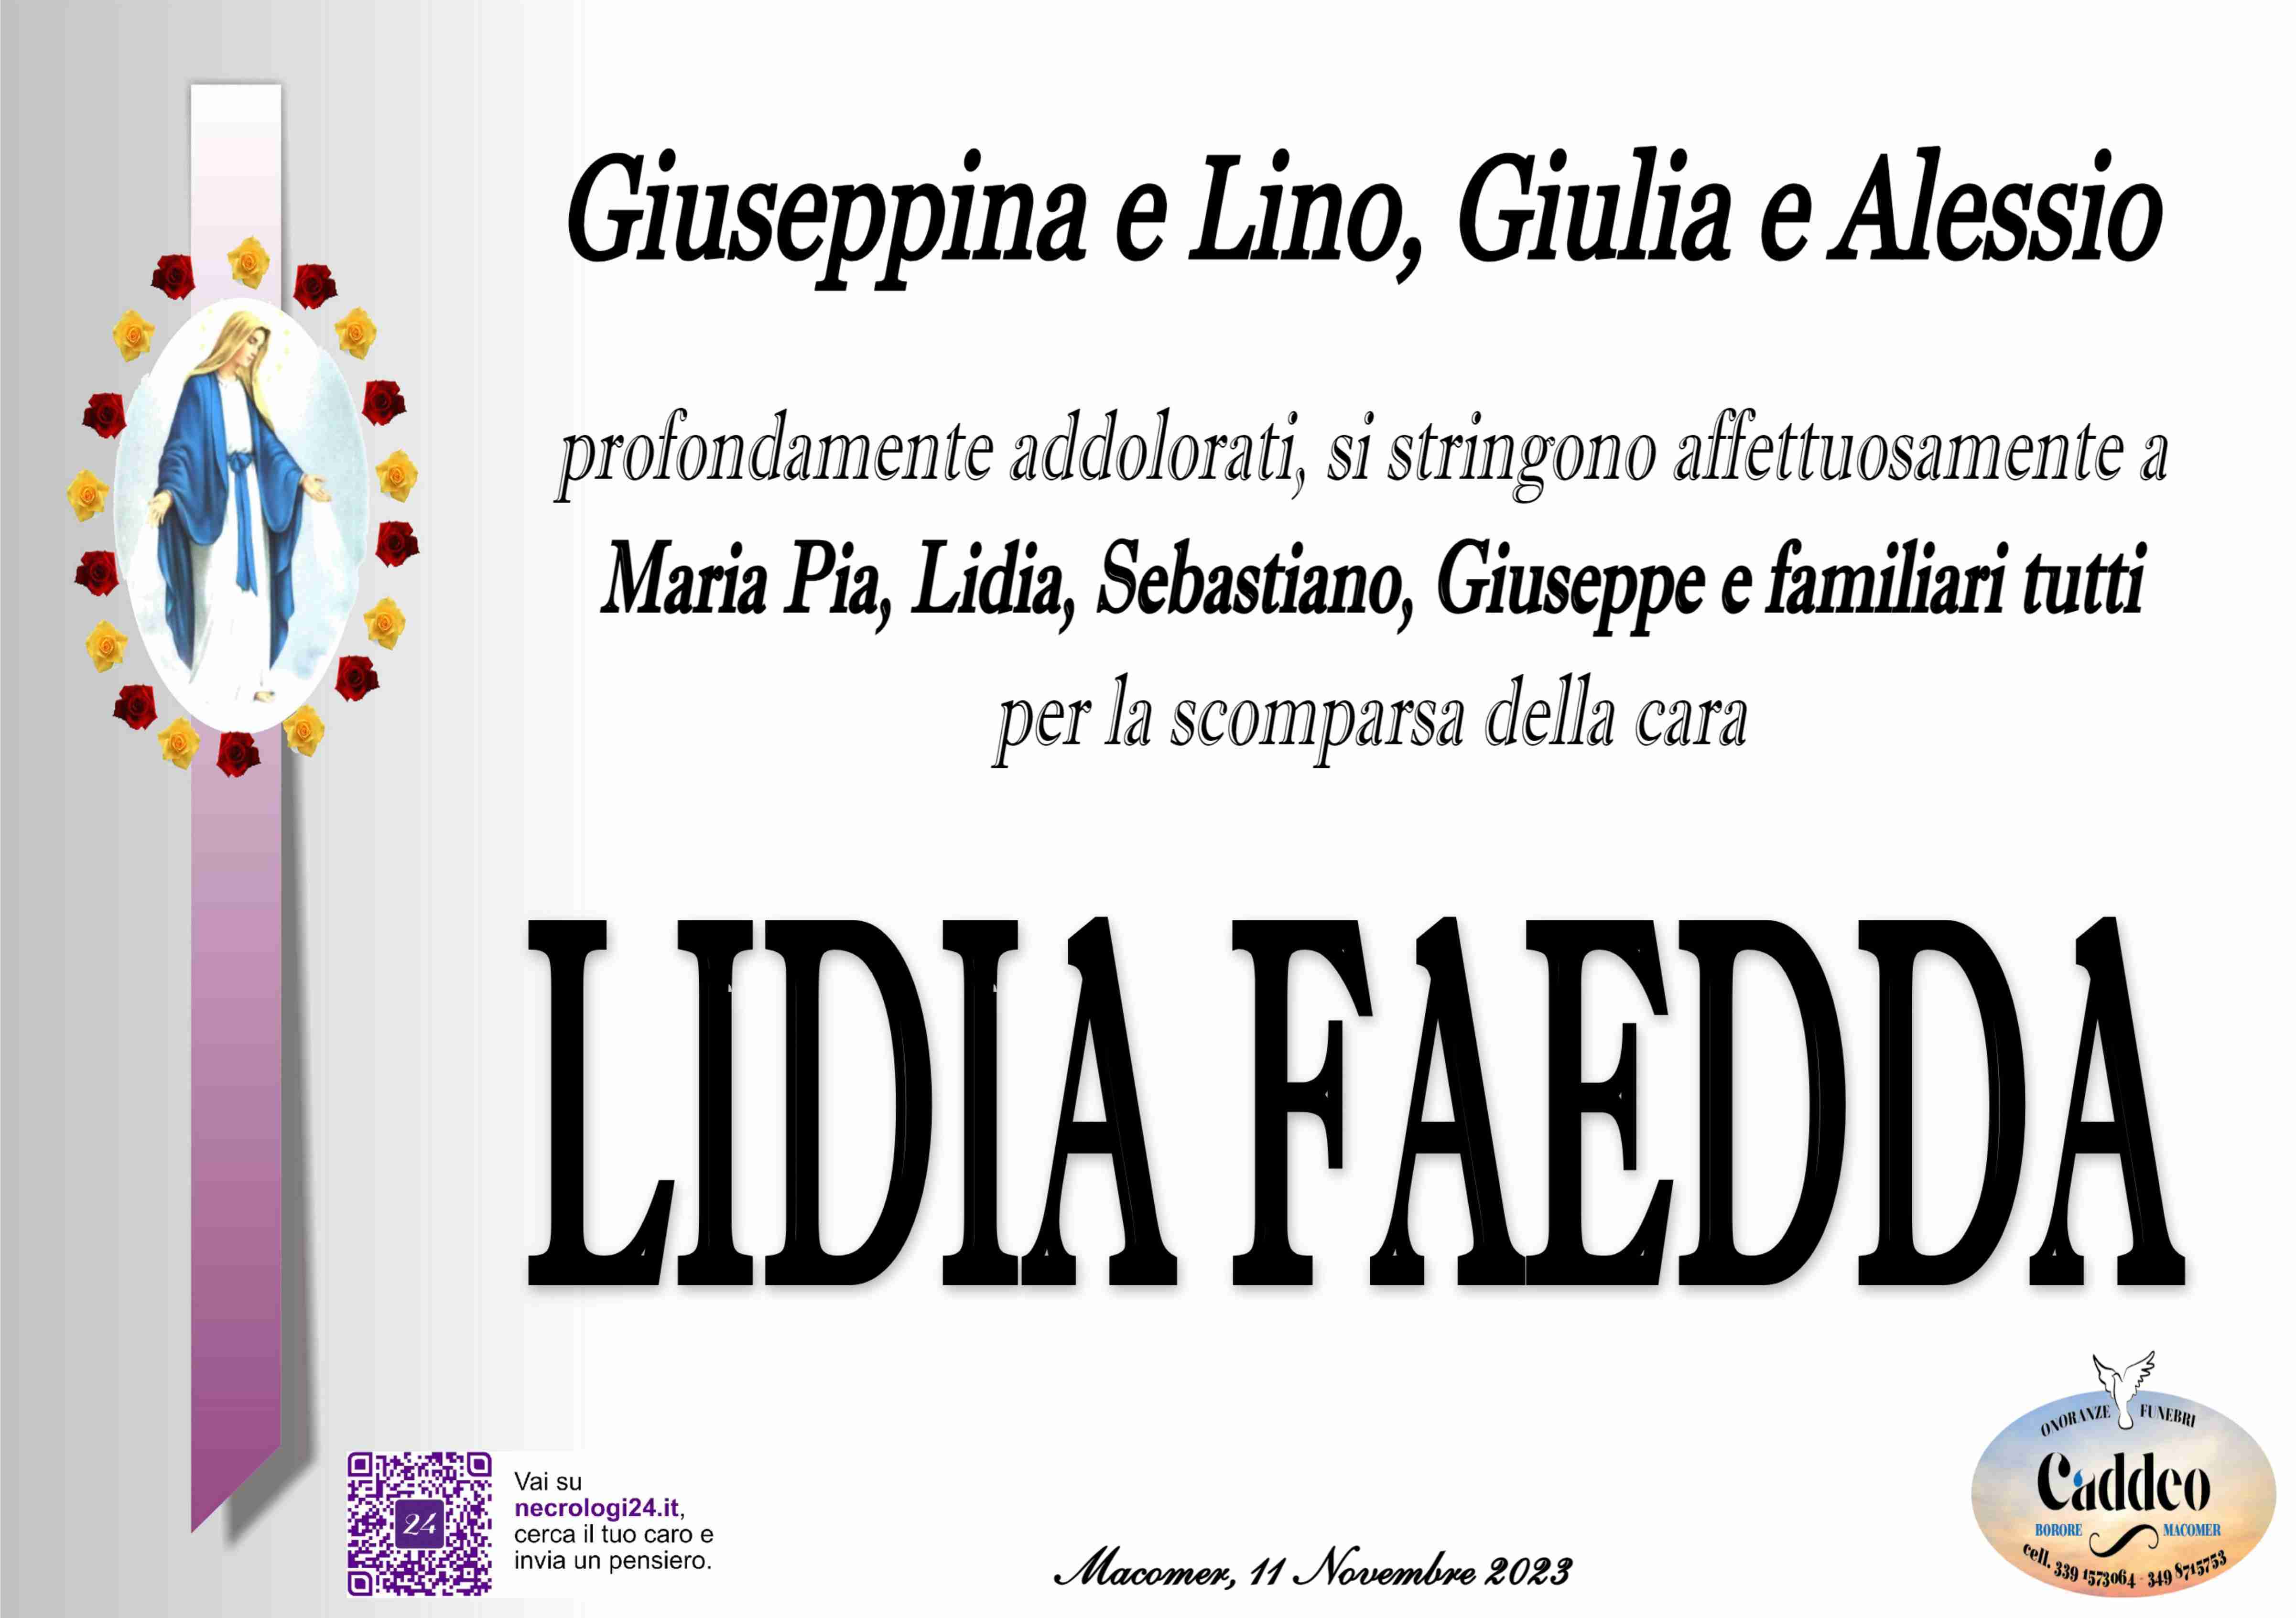 Lidia Faedda